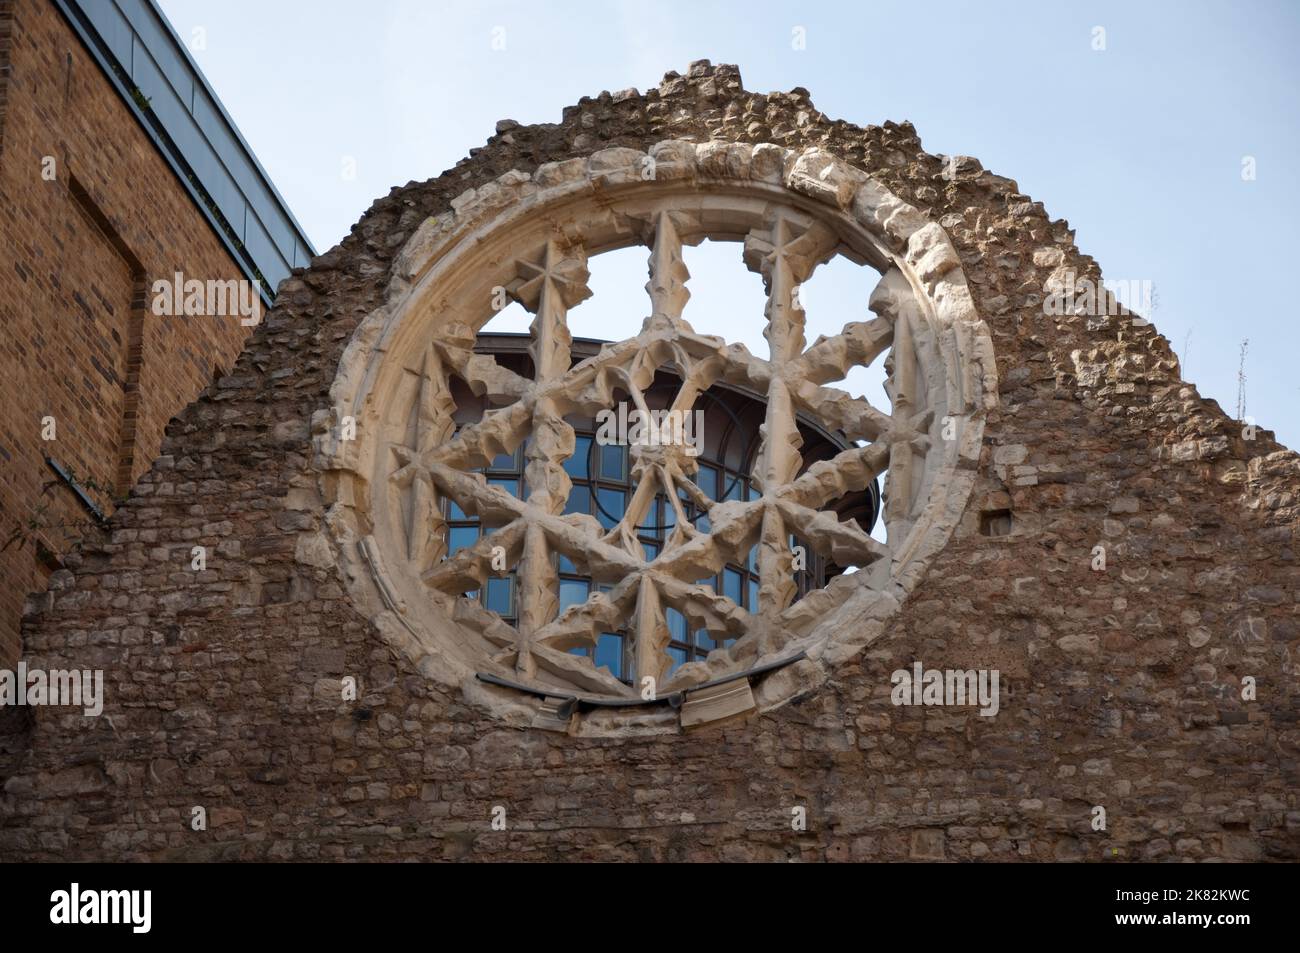 Rose window, ruines du palais des évêques de Winchester, Southwark, Londres, Royaume-Uni - Southwark peut être considéré comme une extension de la ville de Londres. Banque D'Images